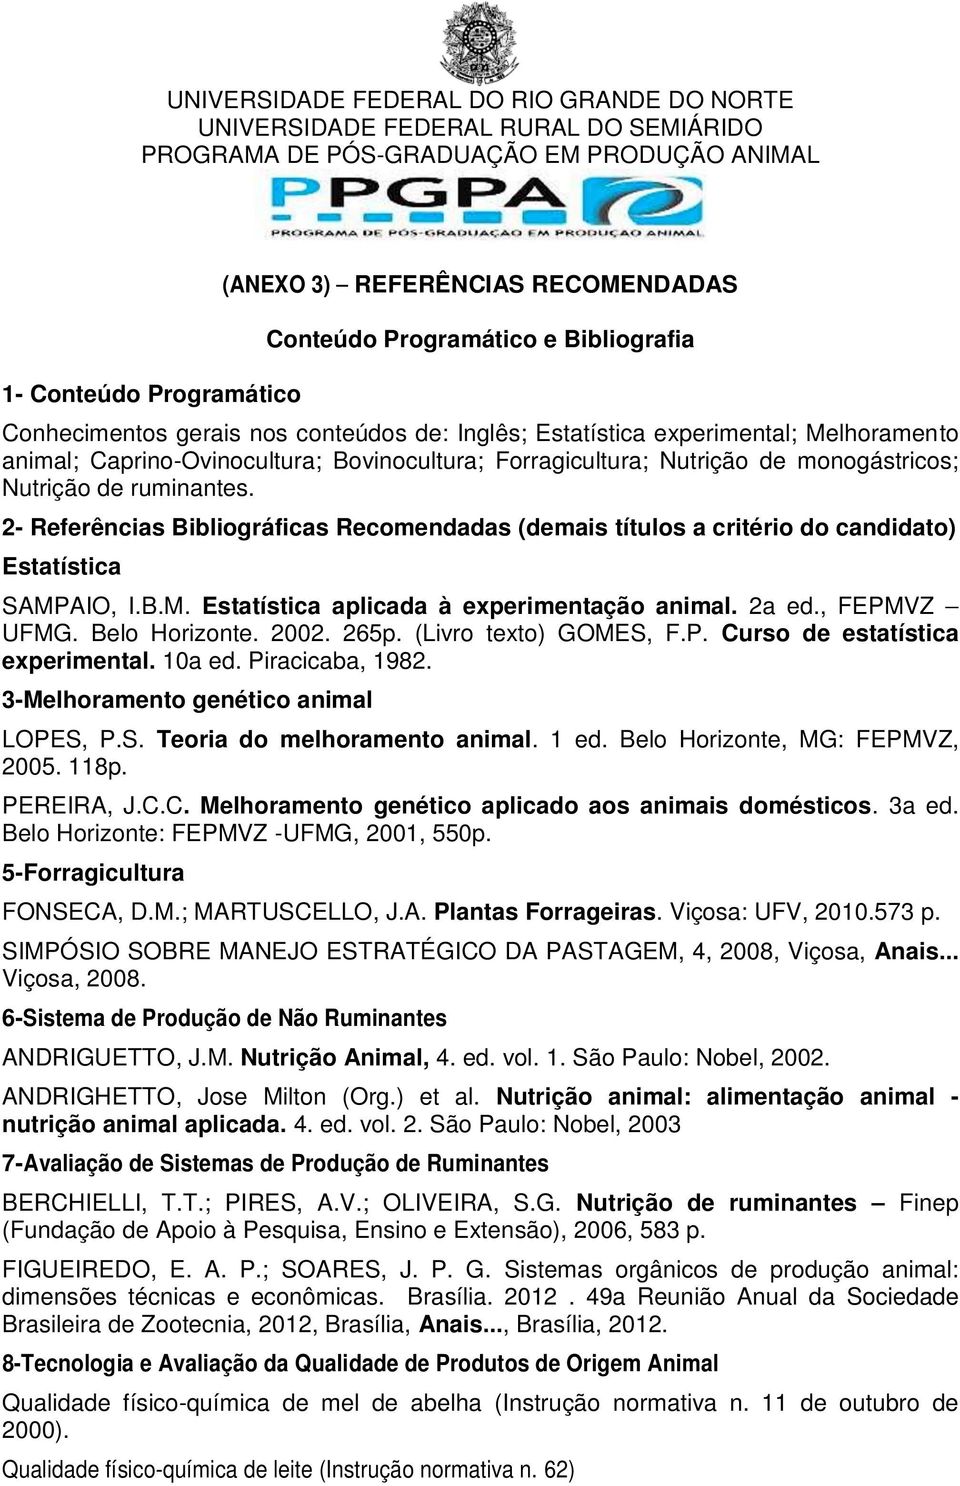 2- Referências Bibliográficas Recomendadas (demais títulos a critério do candidato) Estatística SAMPAIO, I.B.M. Estatística aplicada à experimentação animal. 2a ed., FEPMVZ UFMG. Belo Horizonte. 2002.